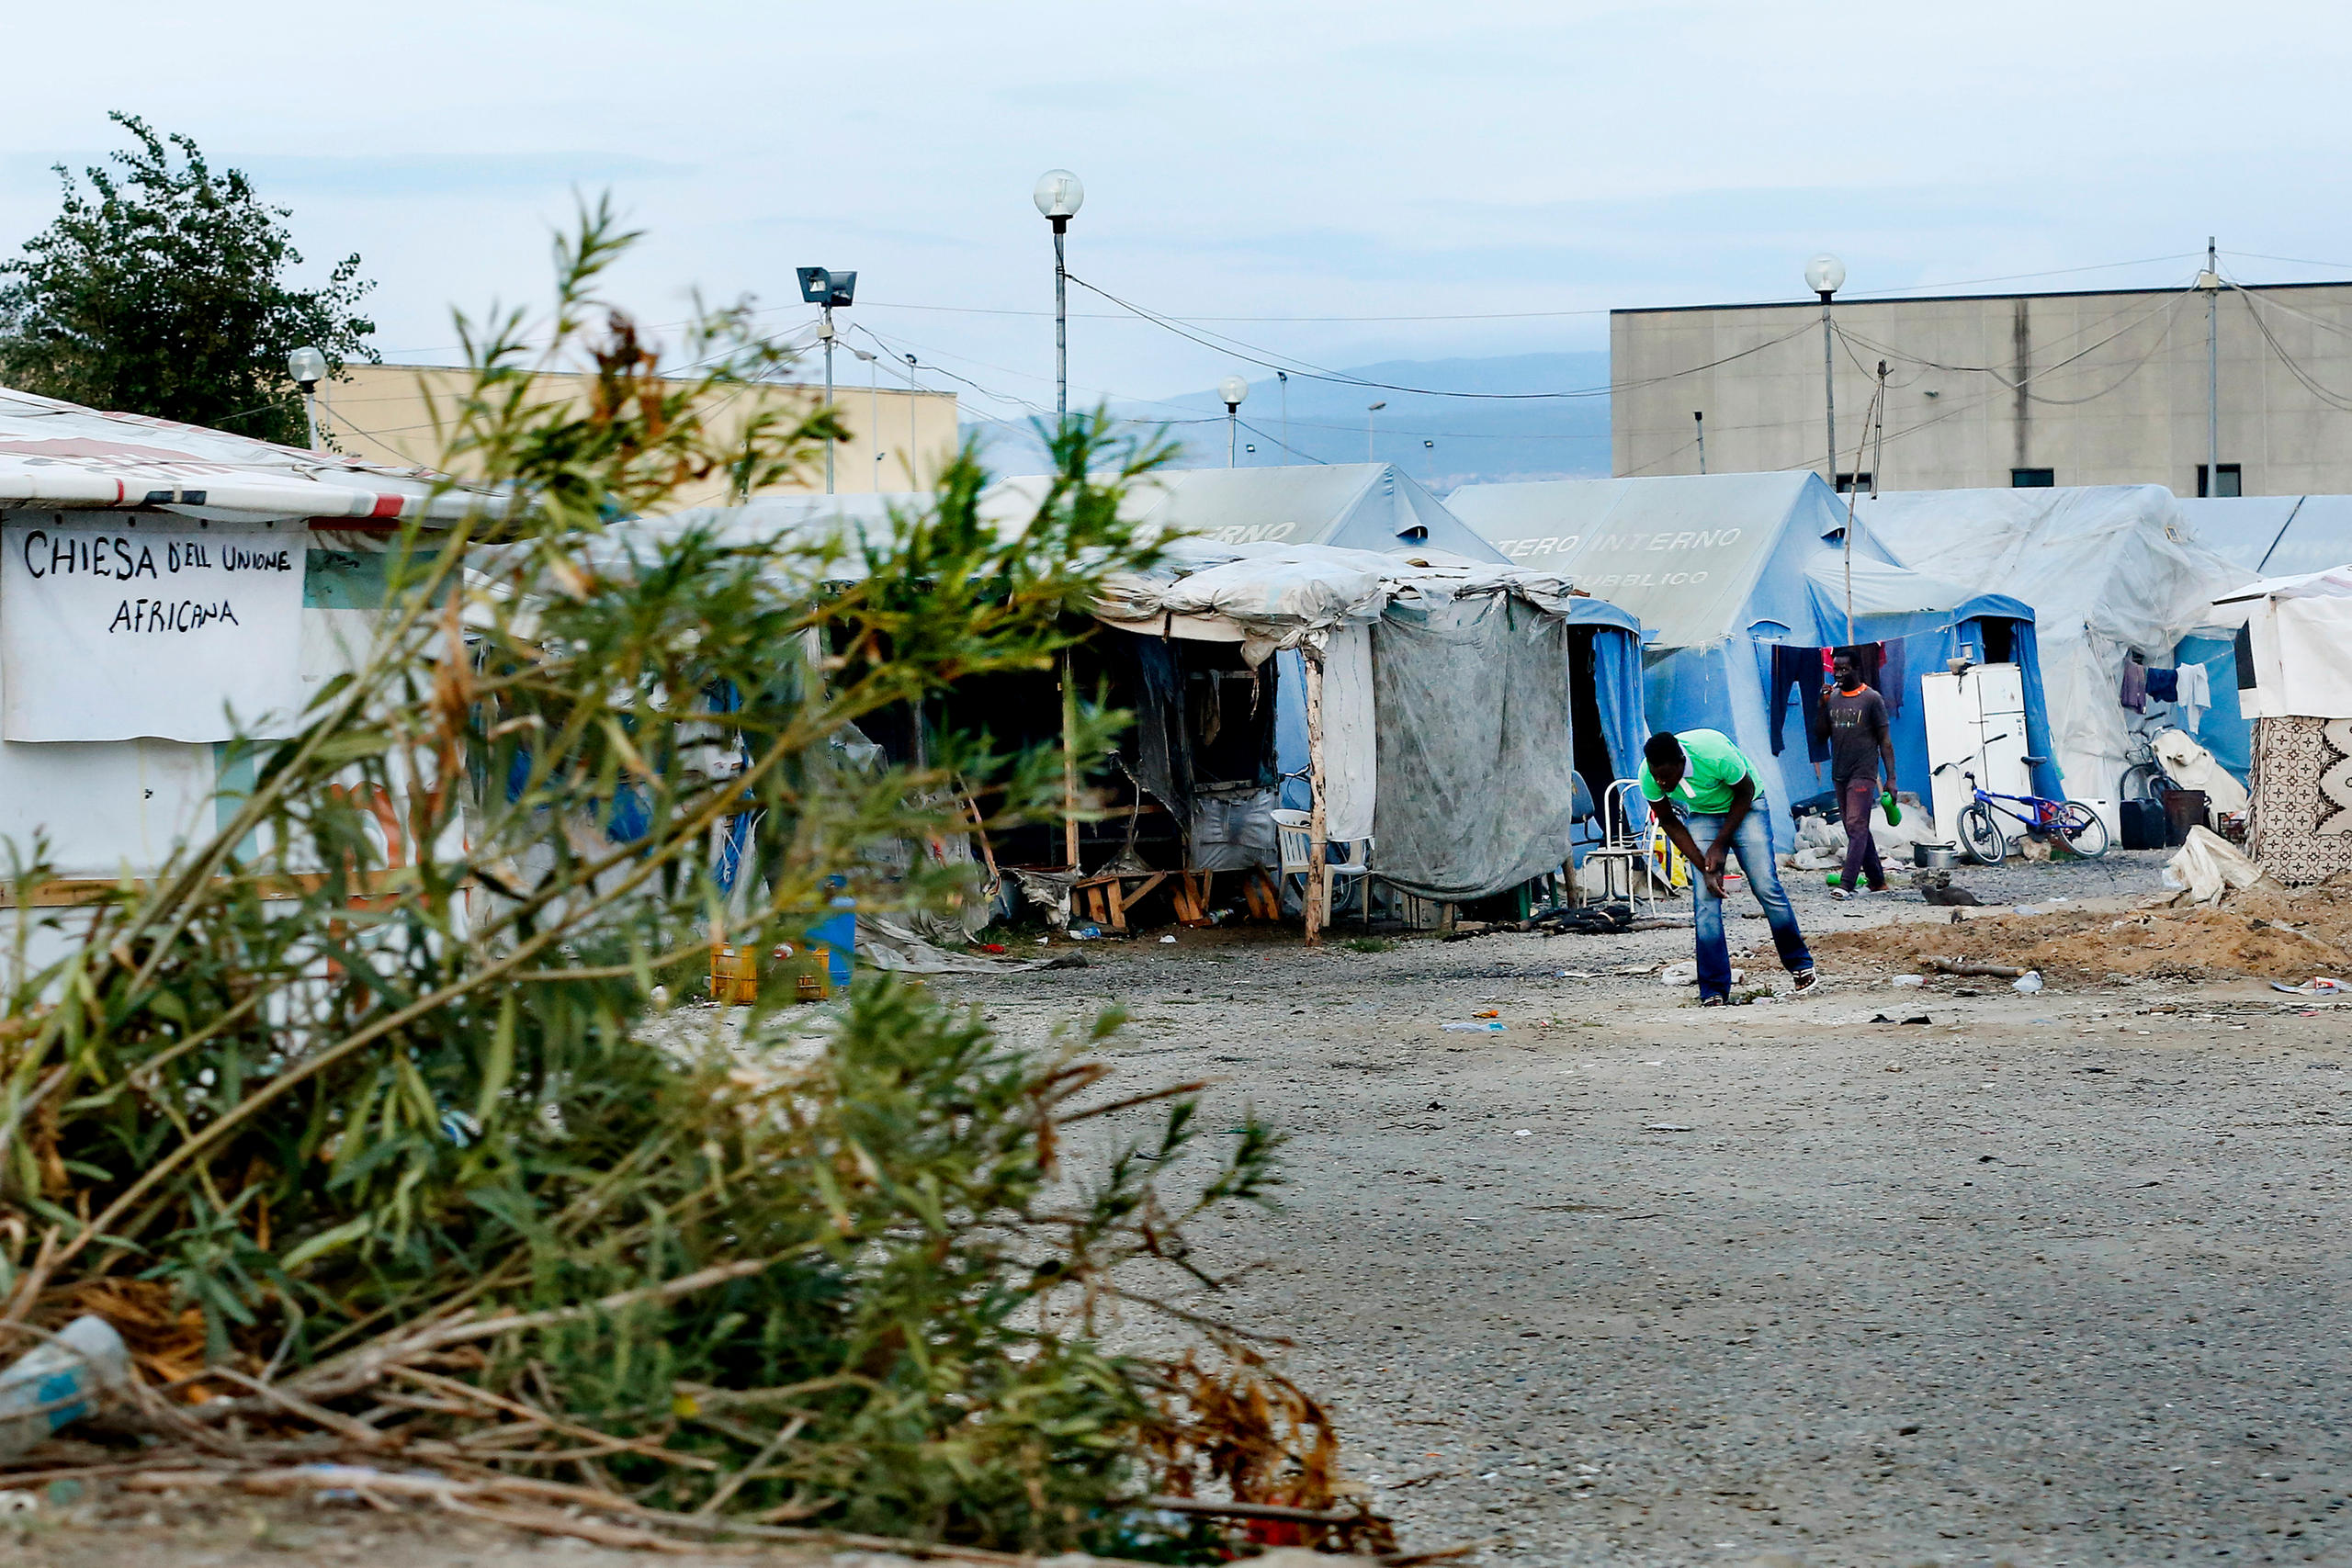 tendopoli illegale che ospita dei migranti a San Ferdinando, in Calabria